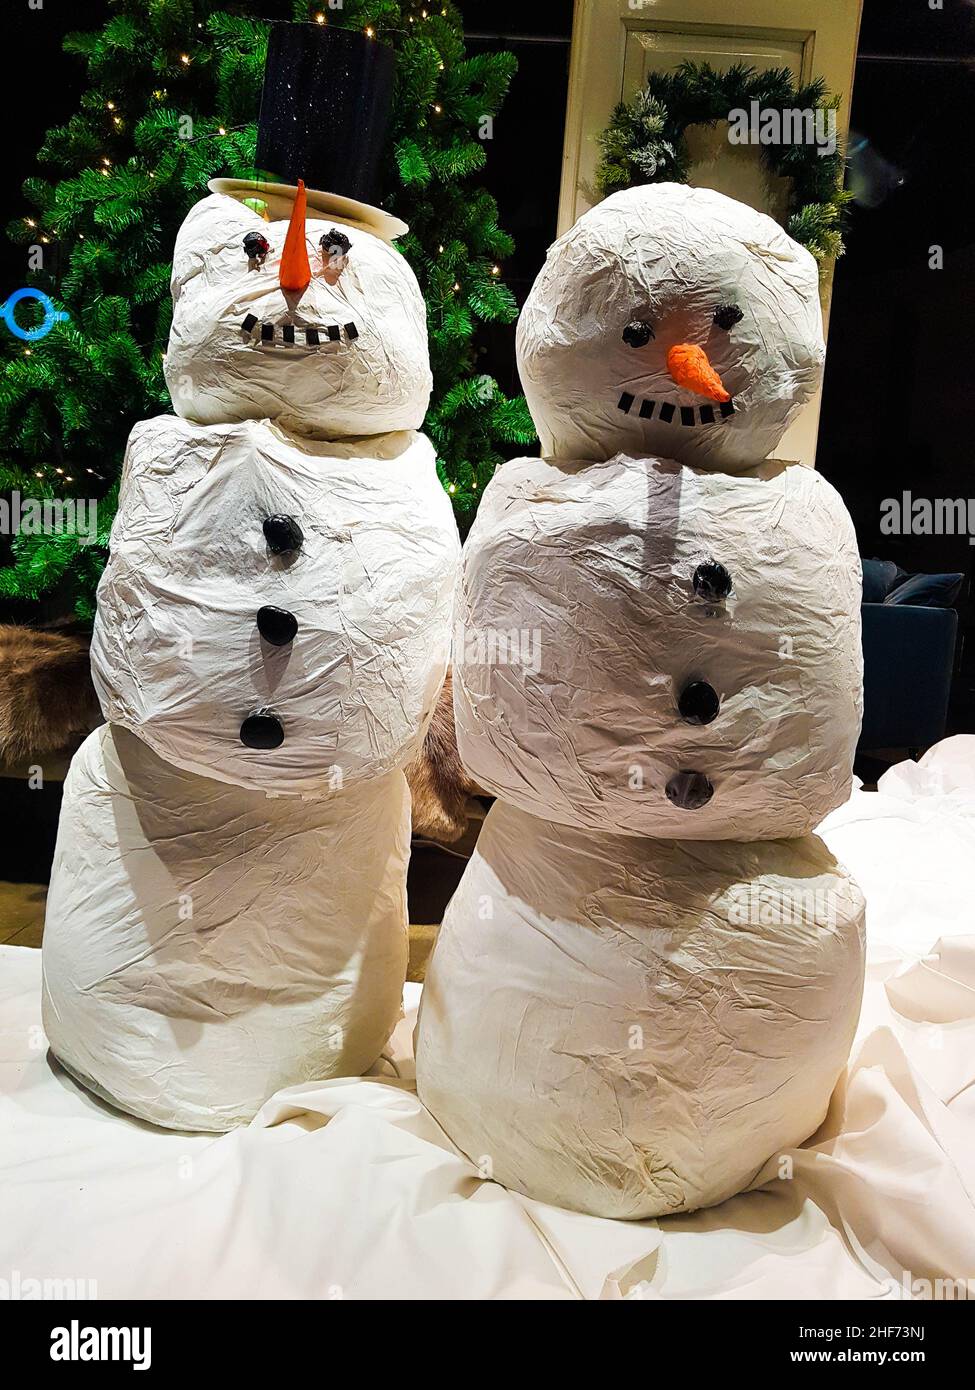 Deux bonhommes de neige en blanc avec un nez de carotte et des boutons de charbon dans une fenêtre avant du magasin.Vœux de saison, joyeux Noël, carte de Noël, vacances, backgrou Banque D'Images